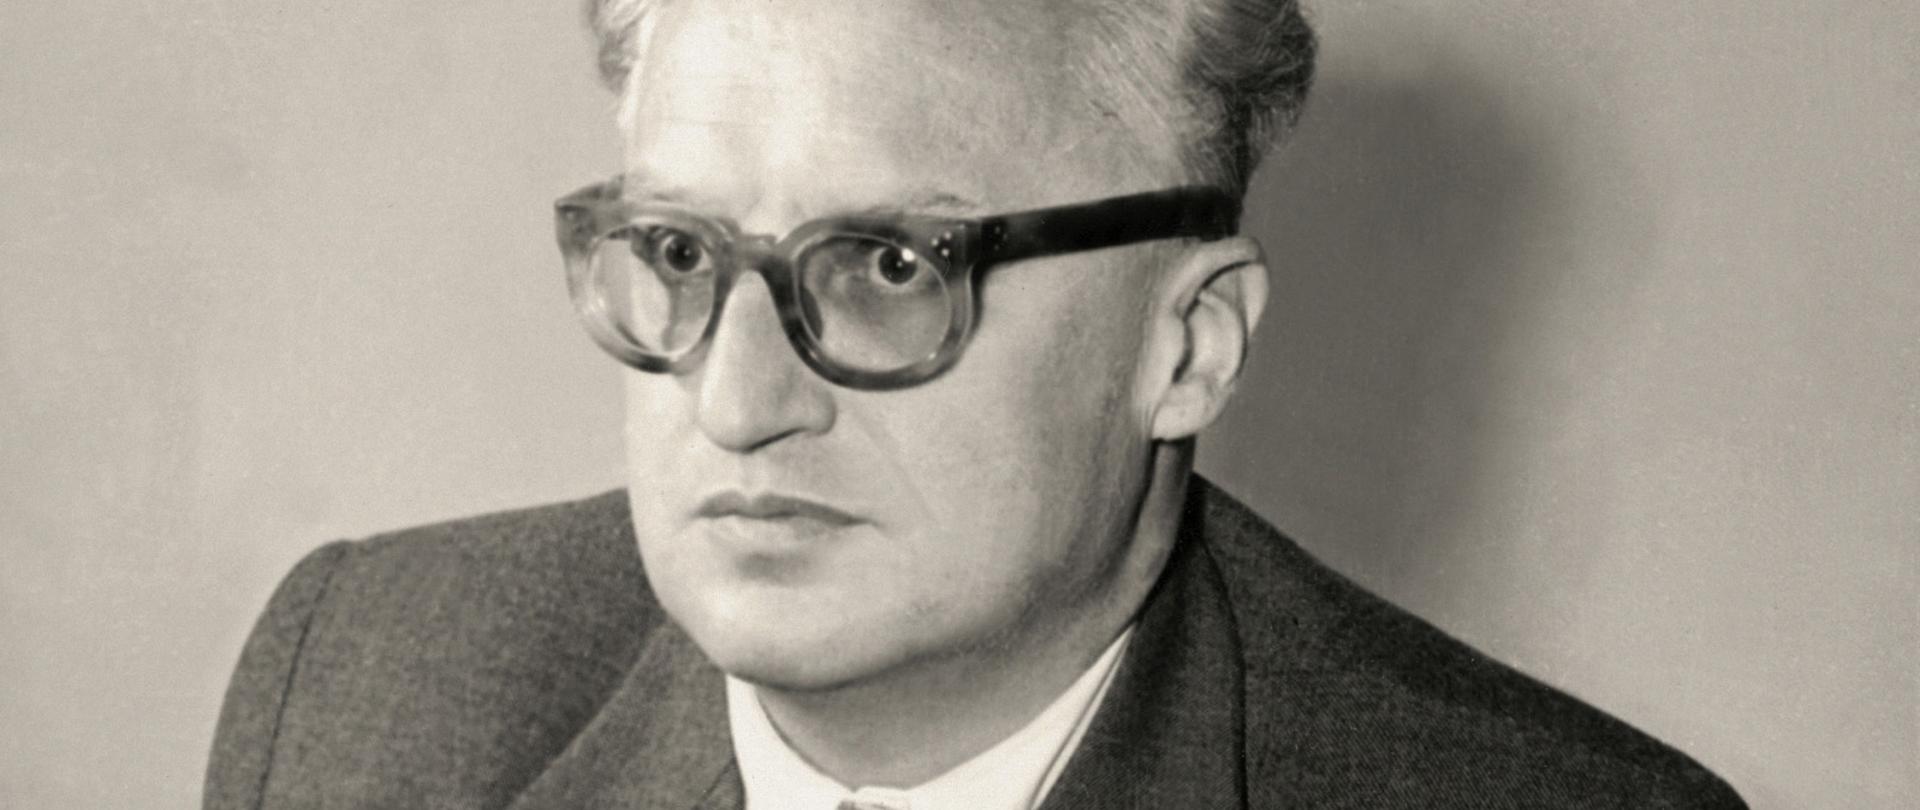 Stanisław Skrzeszewski - czarno-biały portret mężczyzny w okularach z grubymi oprawkami, siwe włosy, ciemna marynarka, jasny krawat w drobne ciemne wzory, kamizelka.